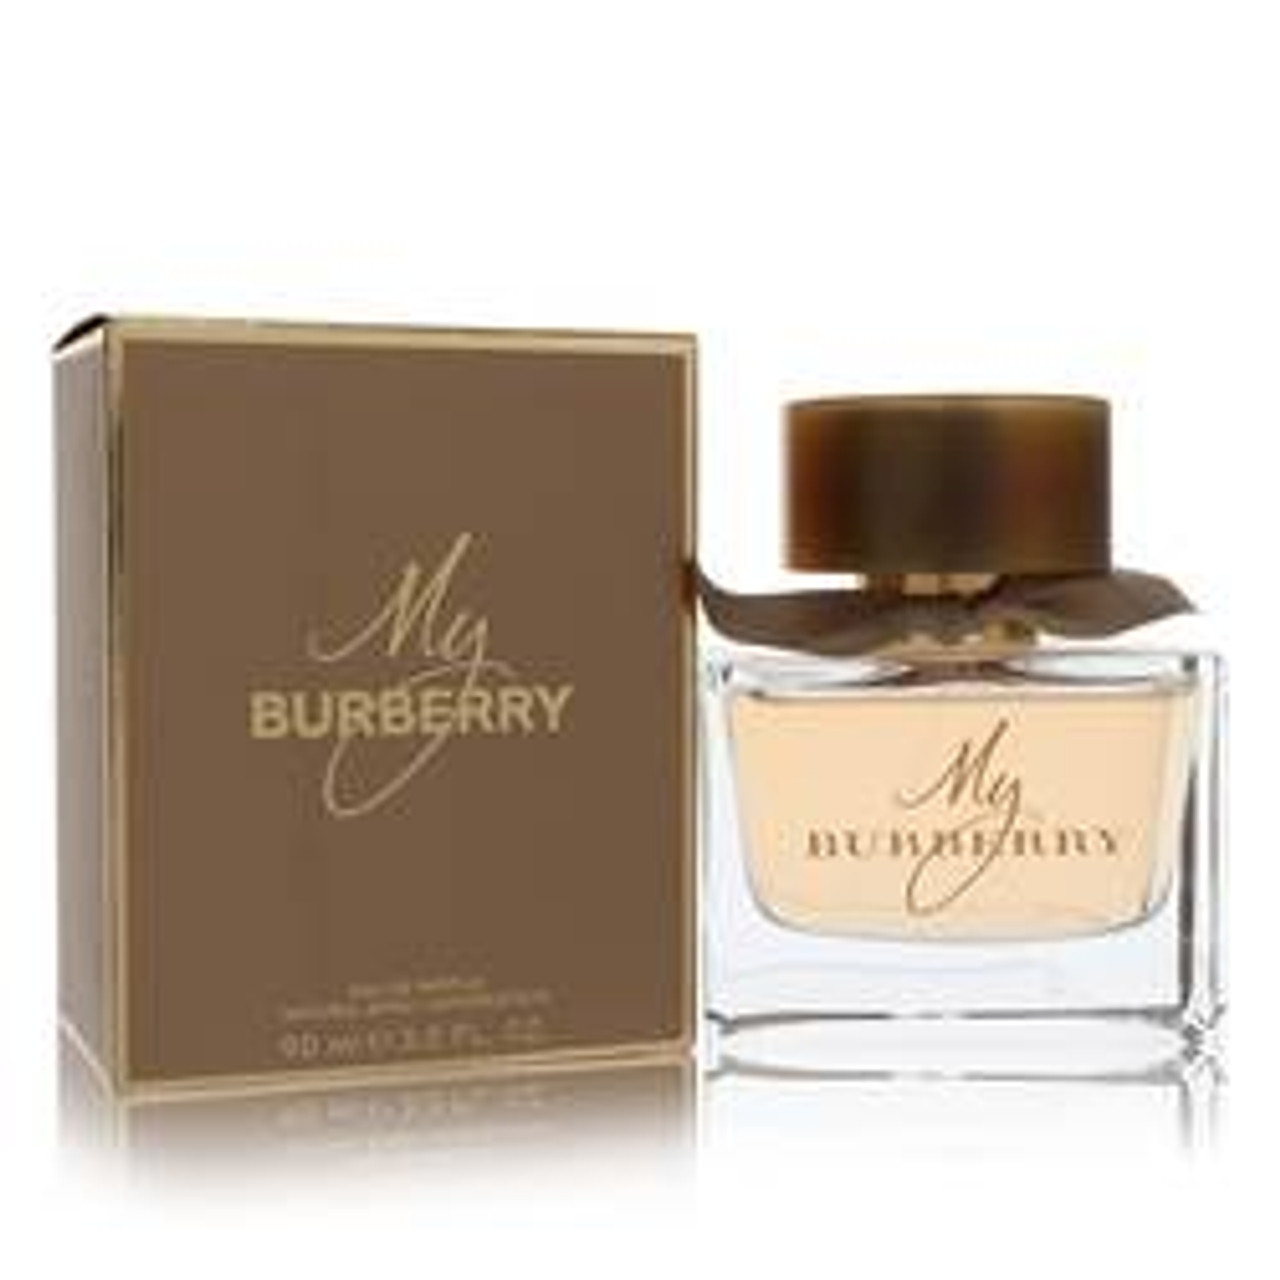 My Burberry Perfume By Burberry Eau De Parfum Spray 3 oz for Women - *Pre-Order